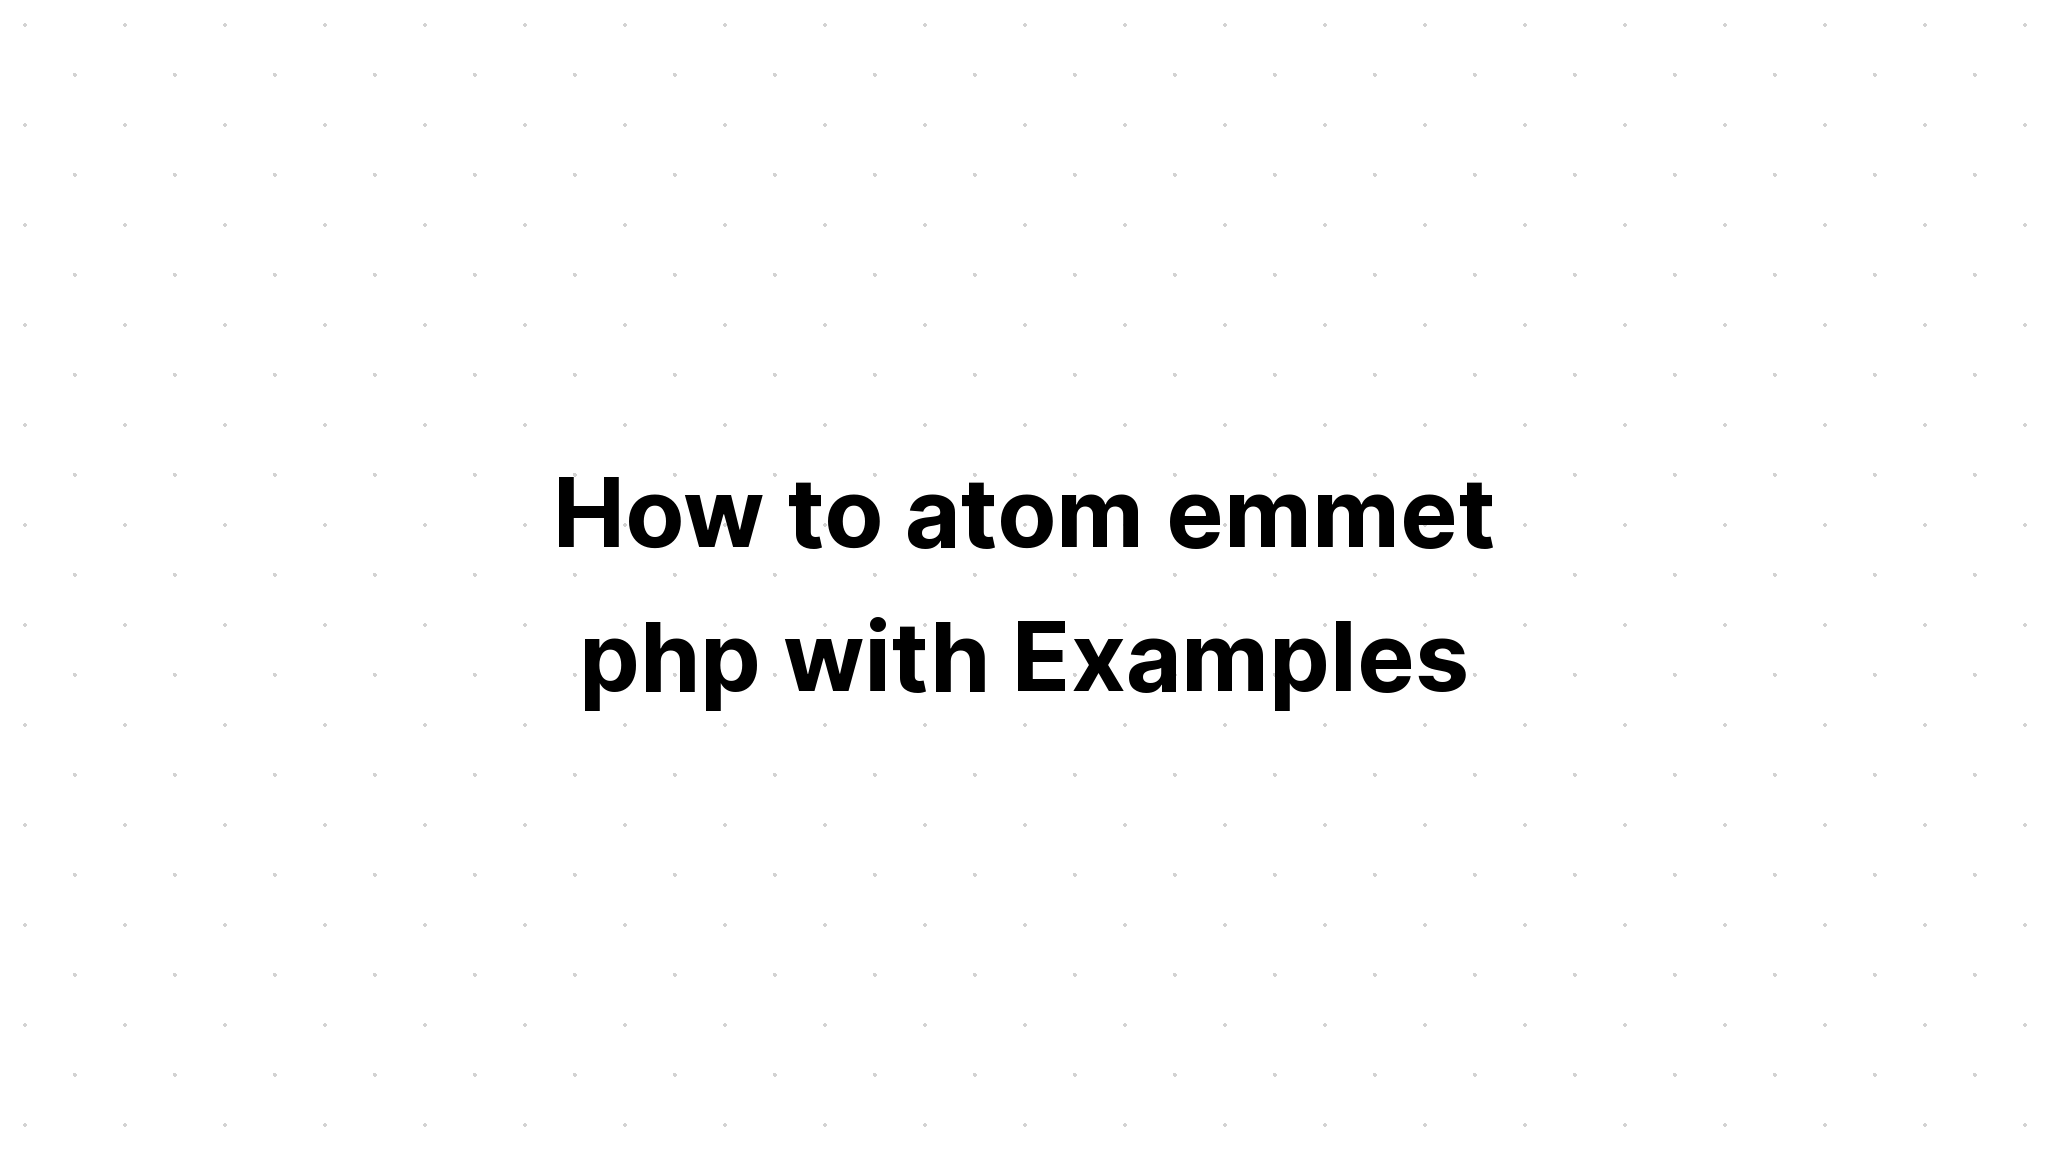 Cách nguyên tử hóa emmet php với các ví dụ